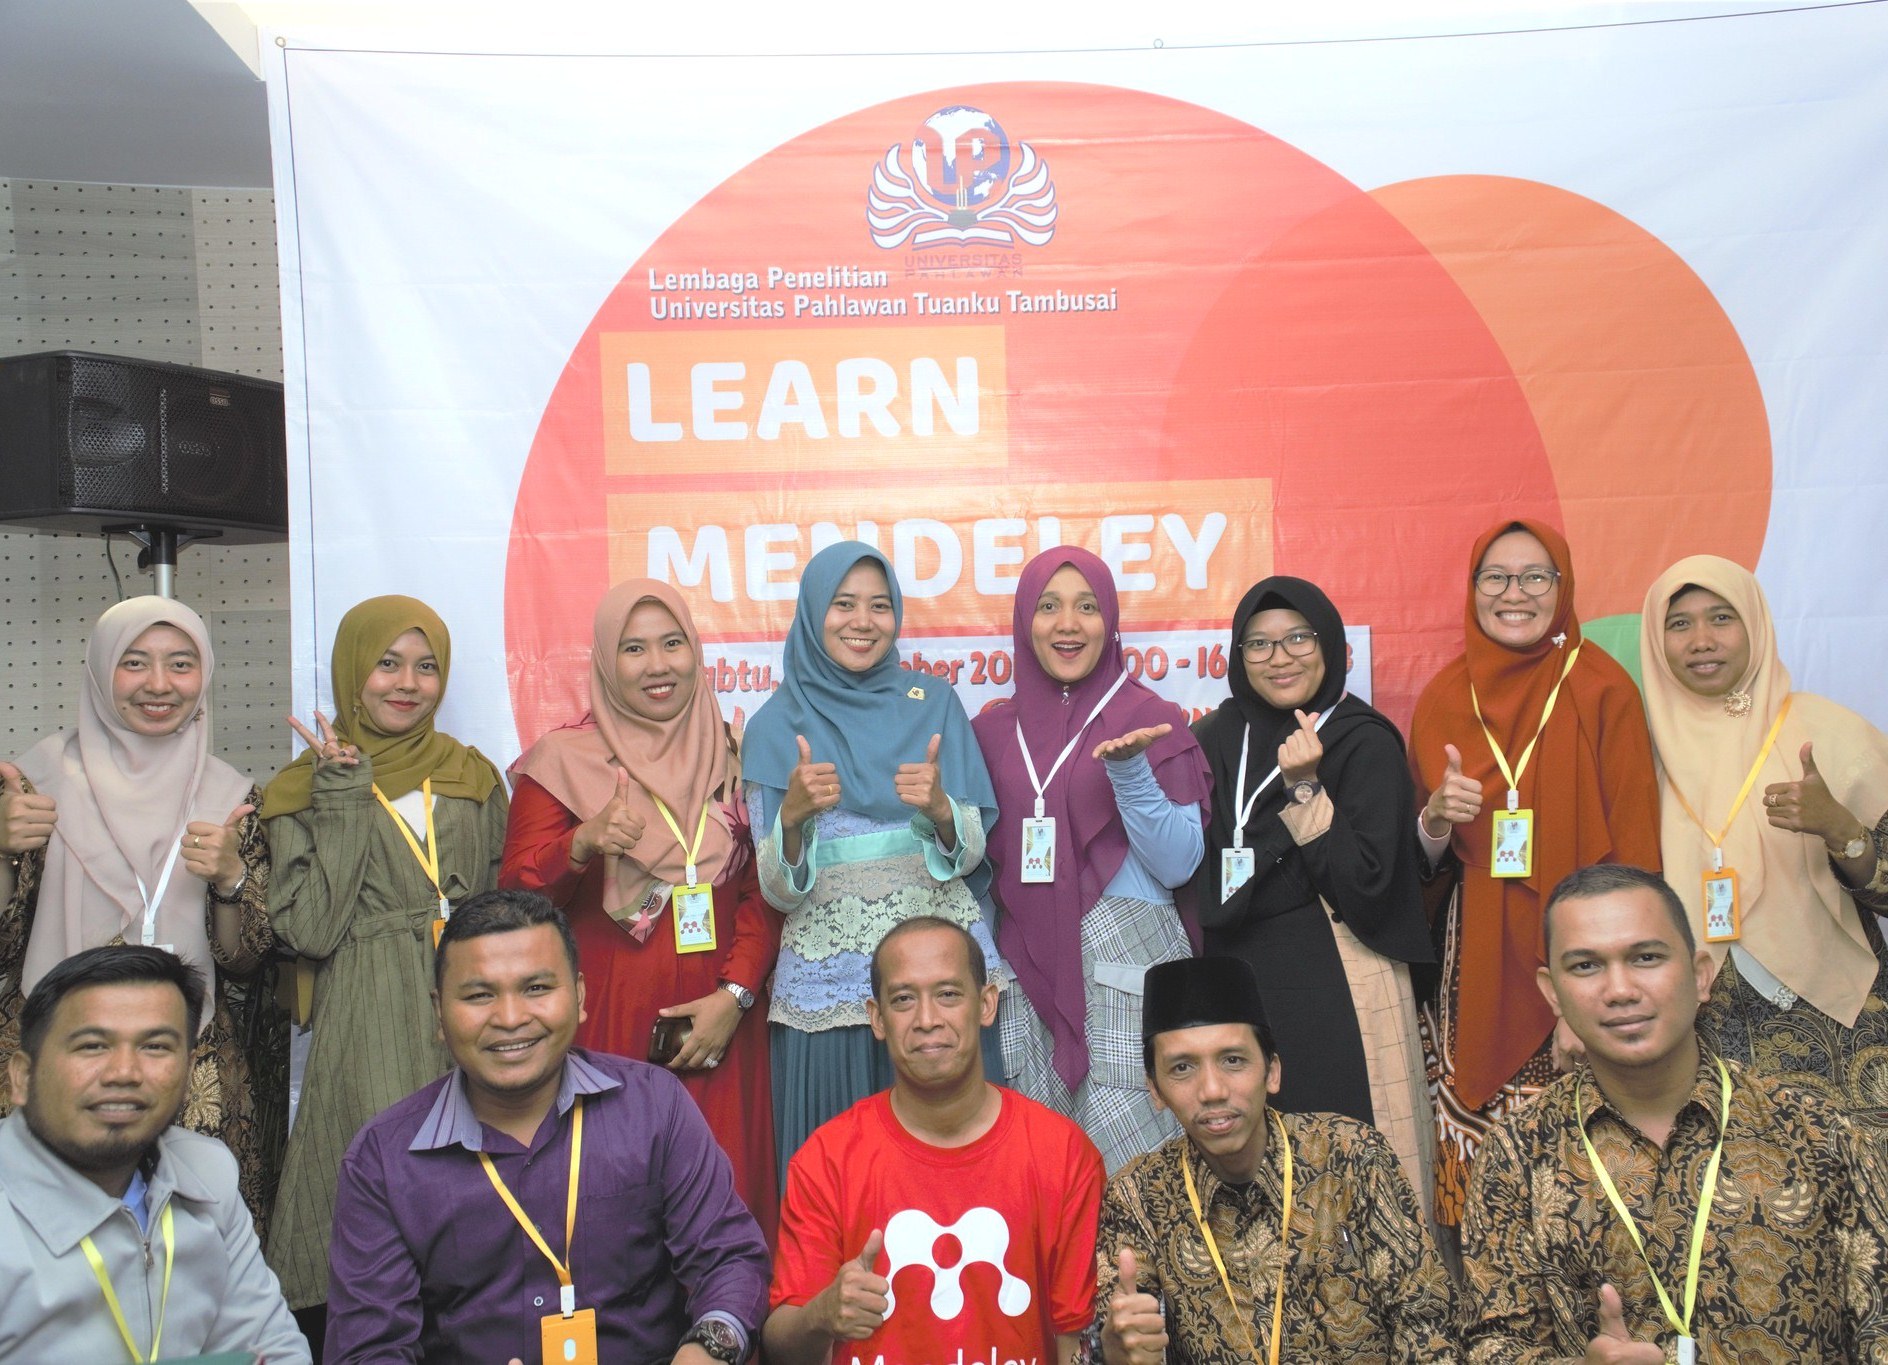 Lembaga Penelitian Universitas Pahlawan Adakan Workshop Learn Mandeley